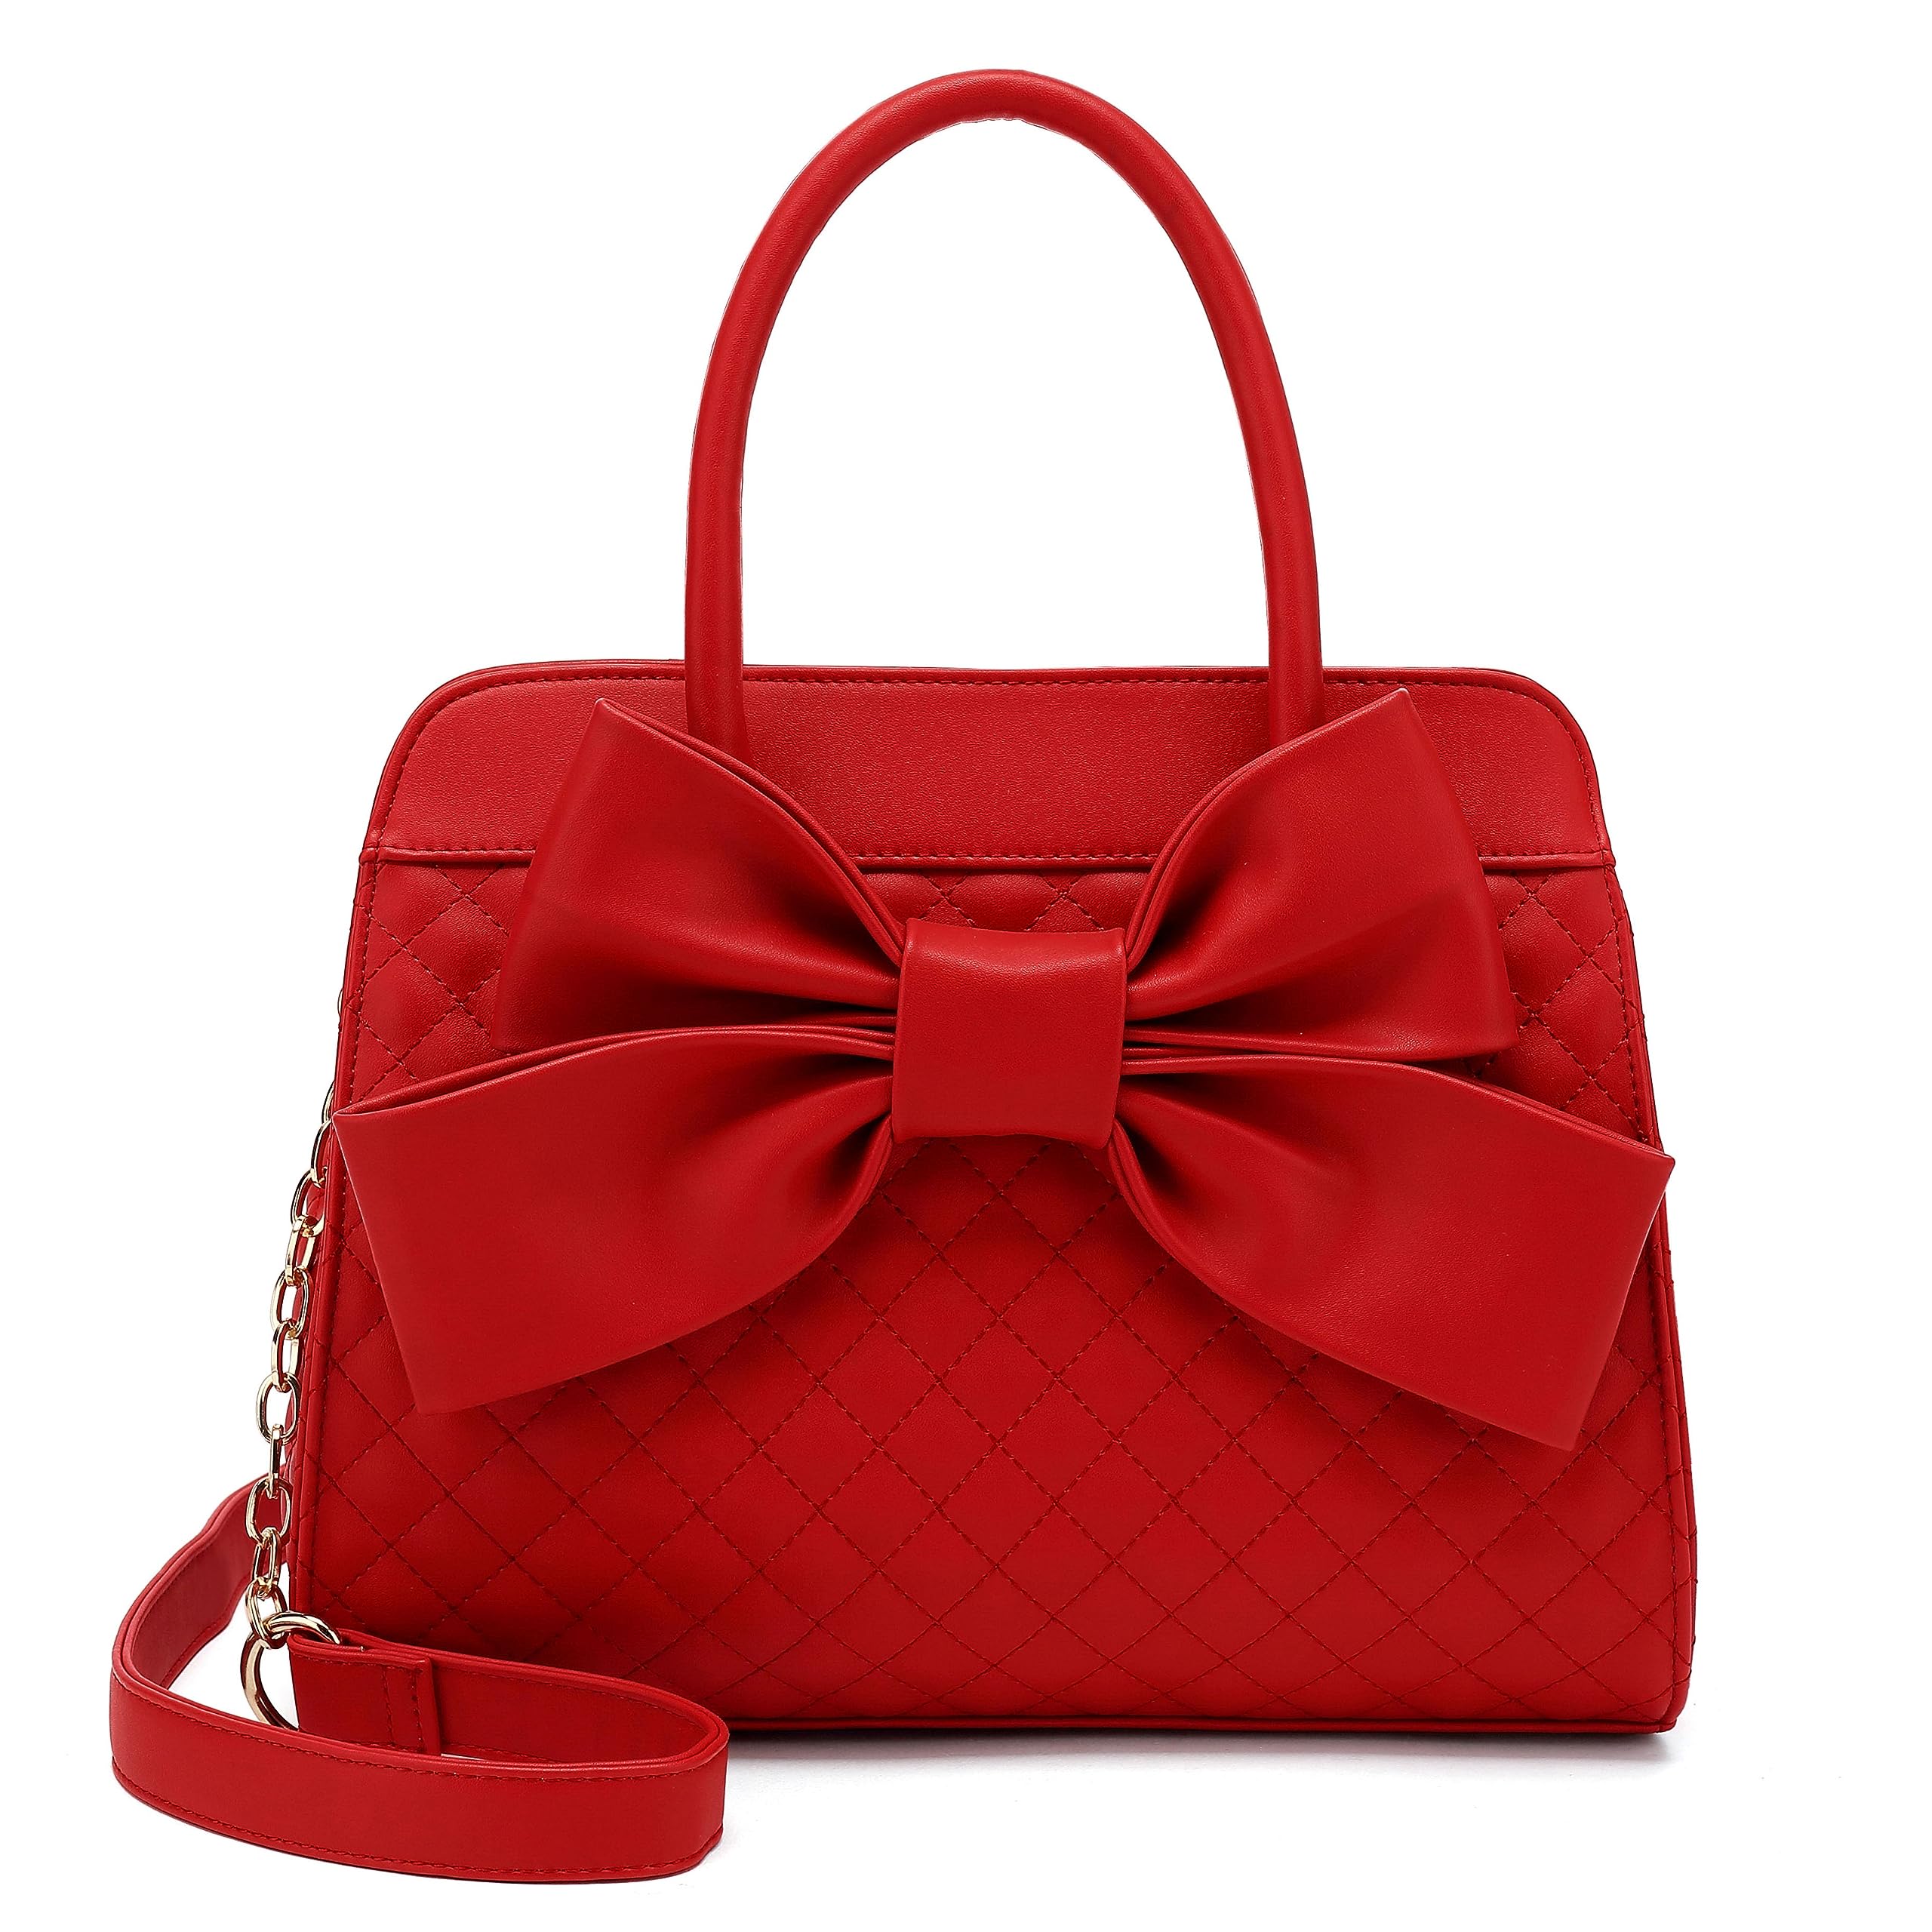 Scarleton Handbags for Women, Purses for Women, Purse with Bow, Satchel Handbags for Women, Satchel Bag for Women, H1048